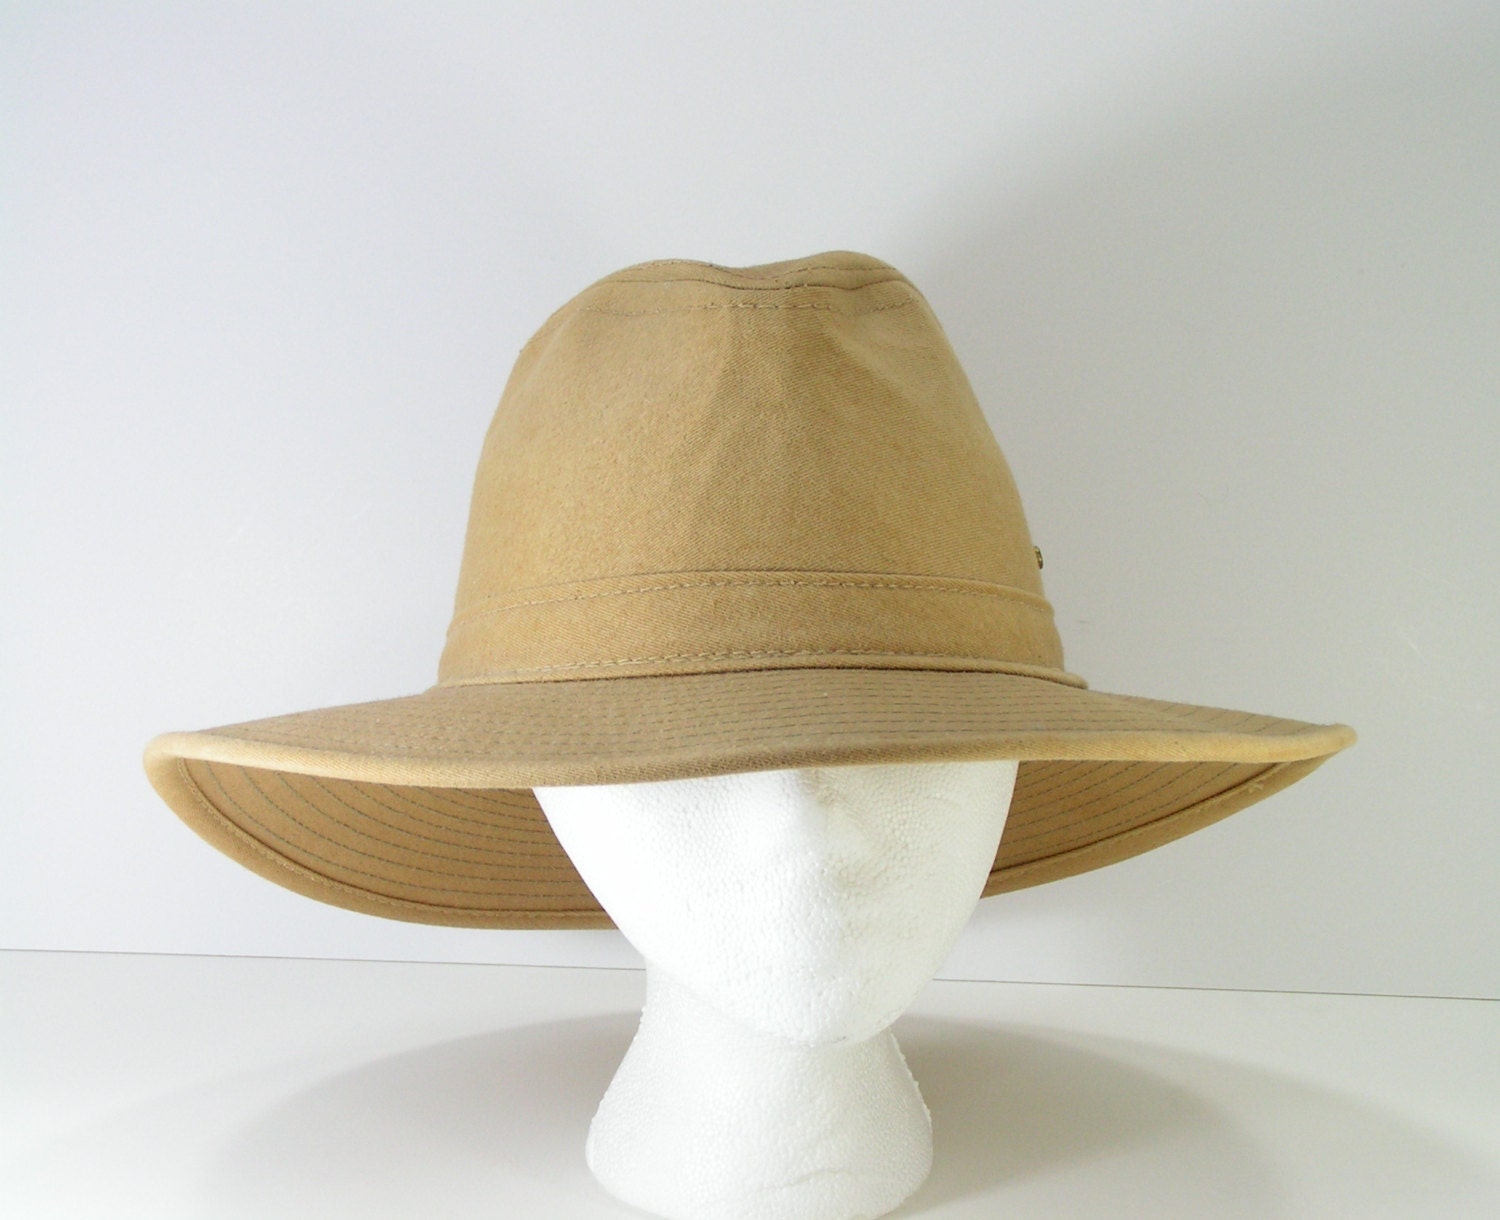 minnetonka safari hat mens 7 1 /4 large tan fishing outback